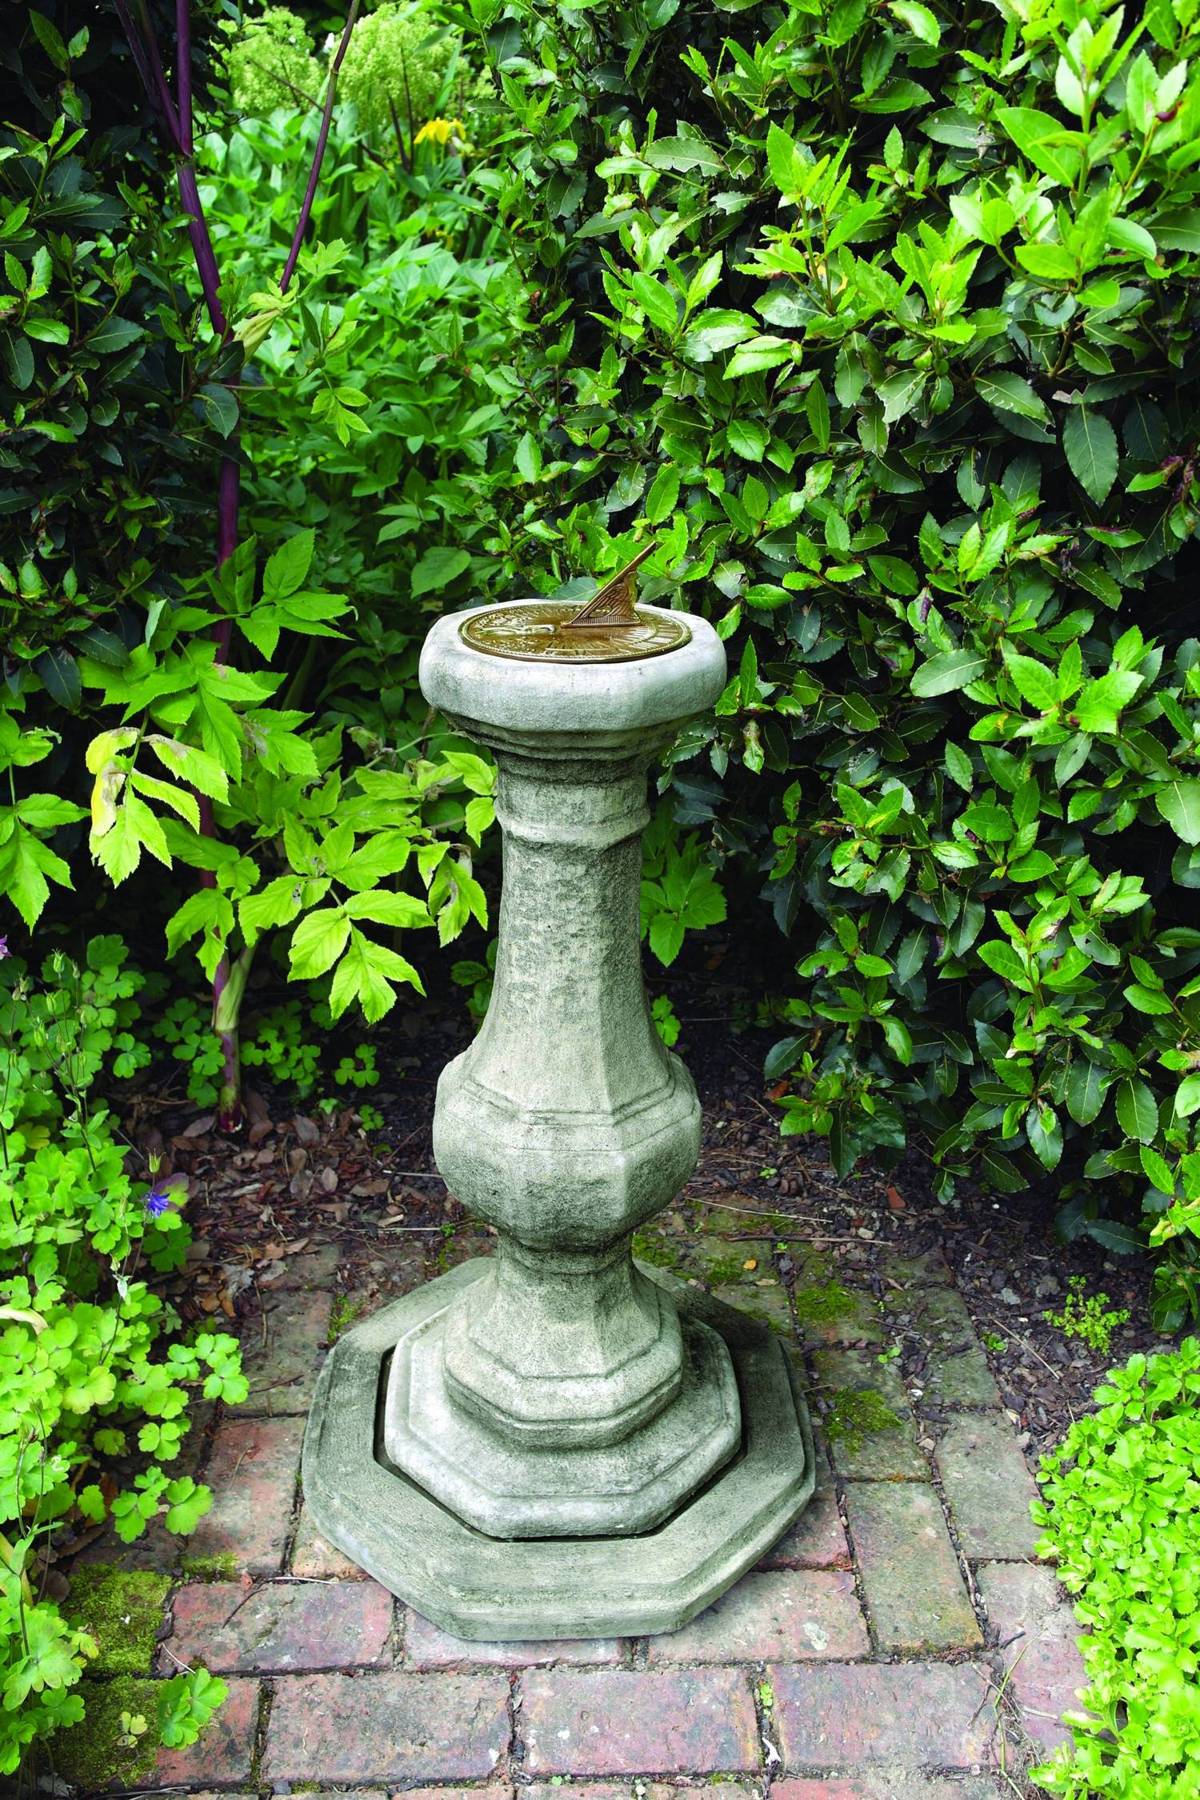 Aged Brass Sundial on Stone Garden Pedestal